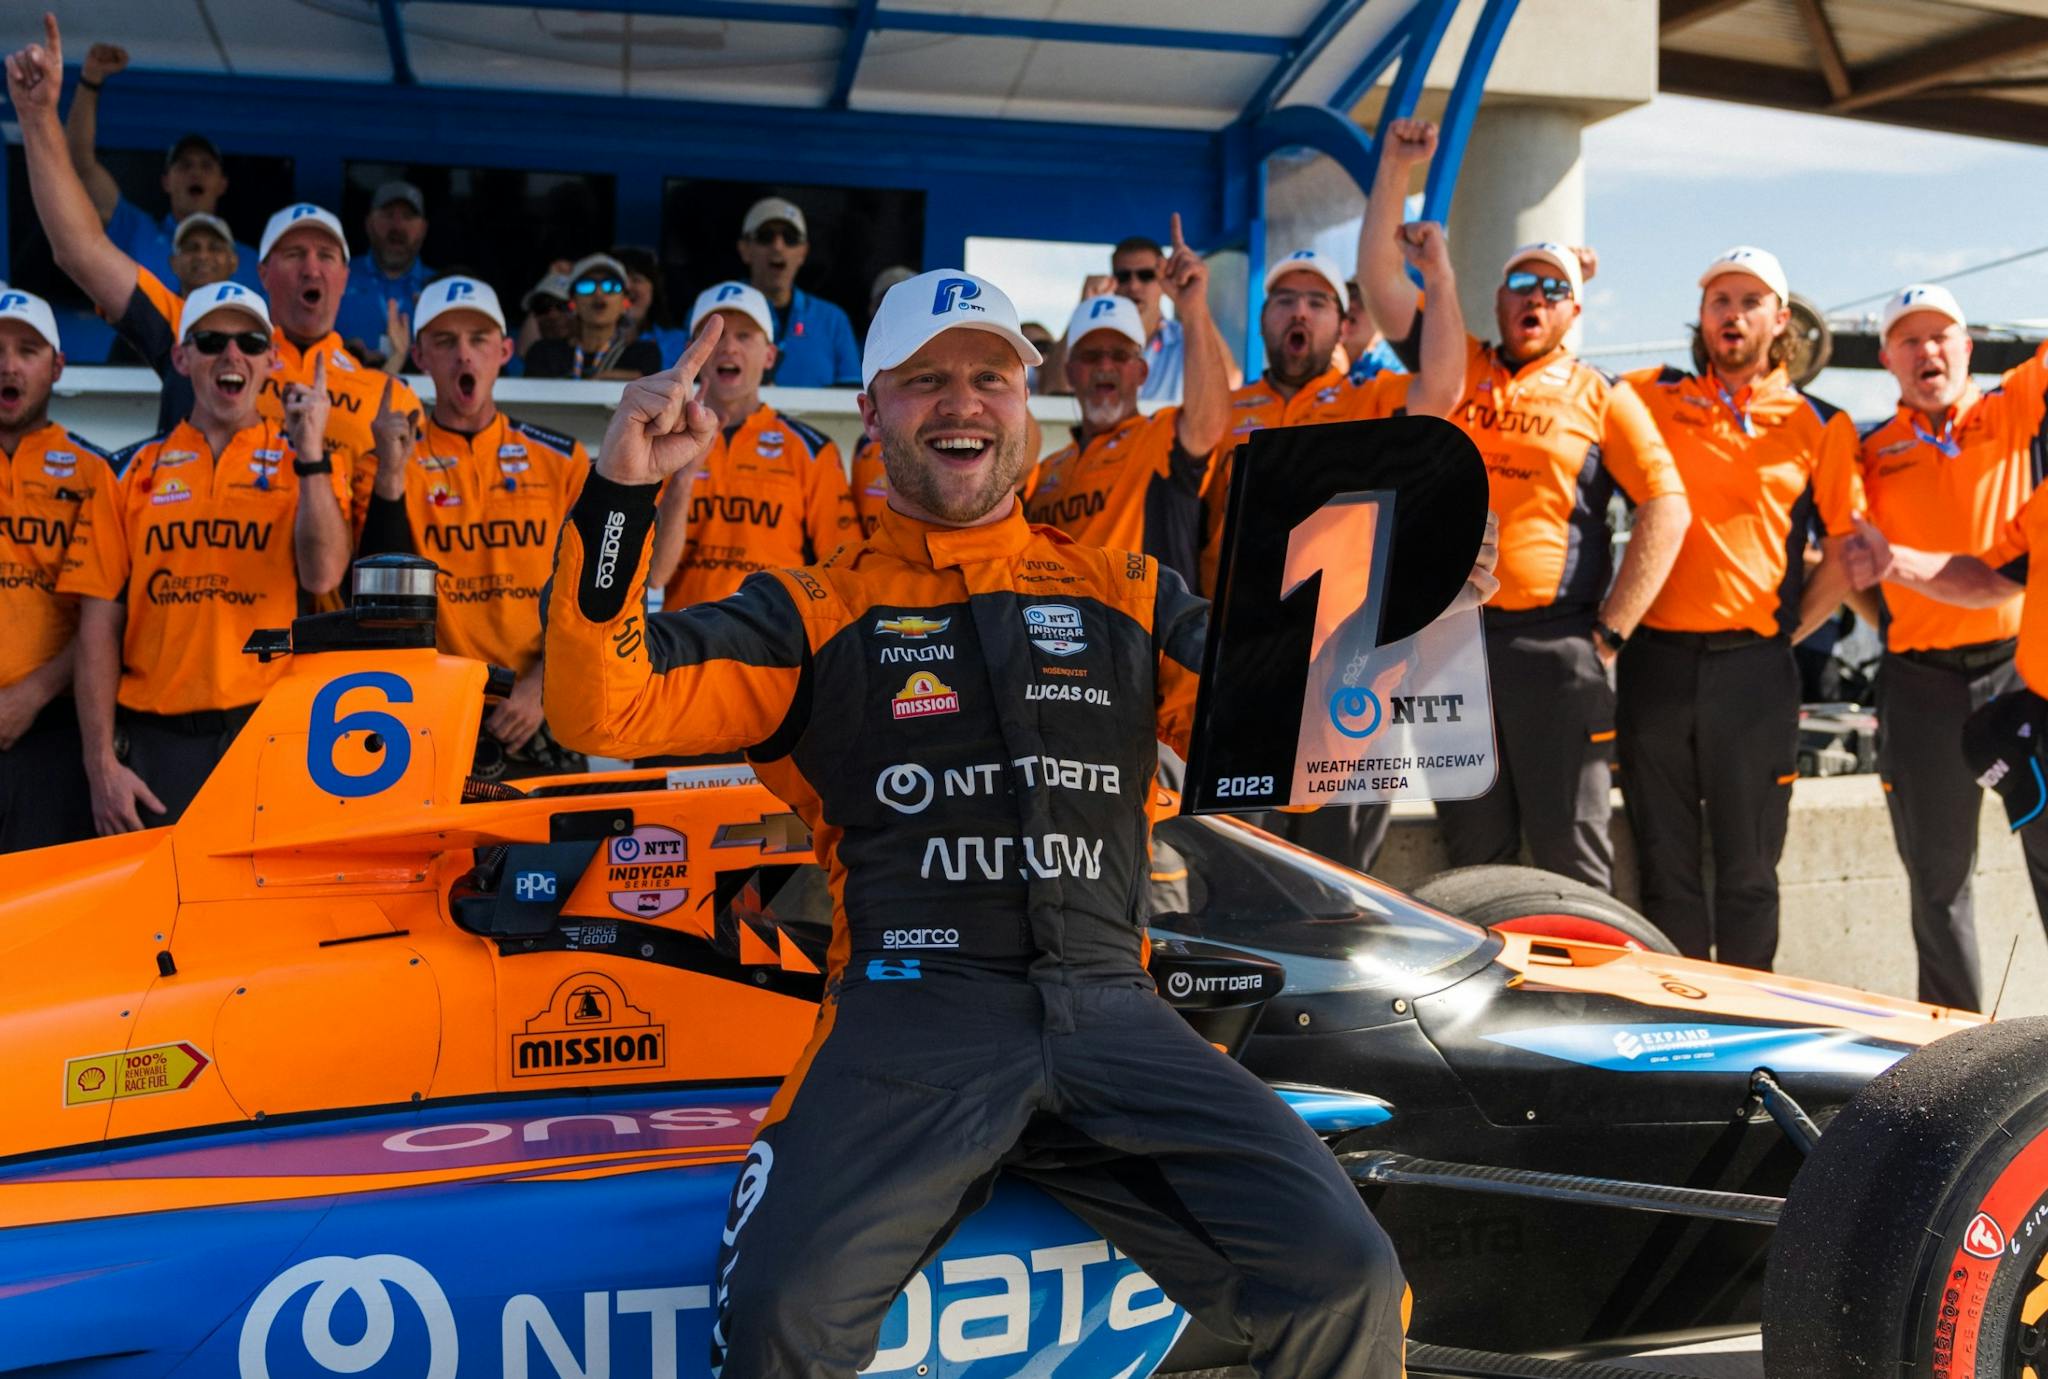 Finał sezonu Indy! Rosenqvist powalczy o zwycięstwo przed odejściem z McLarena